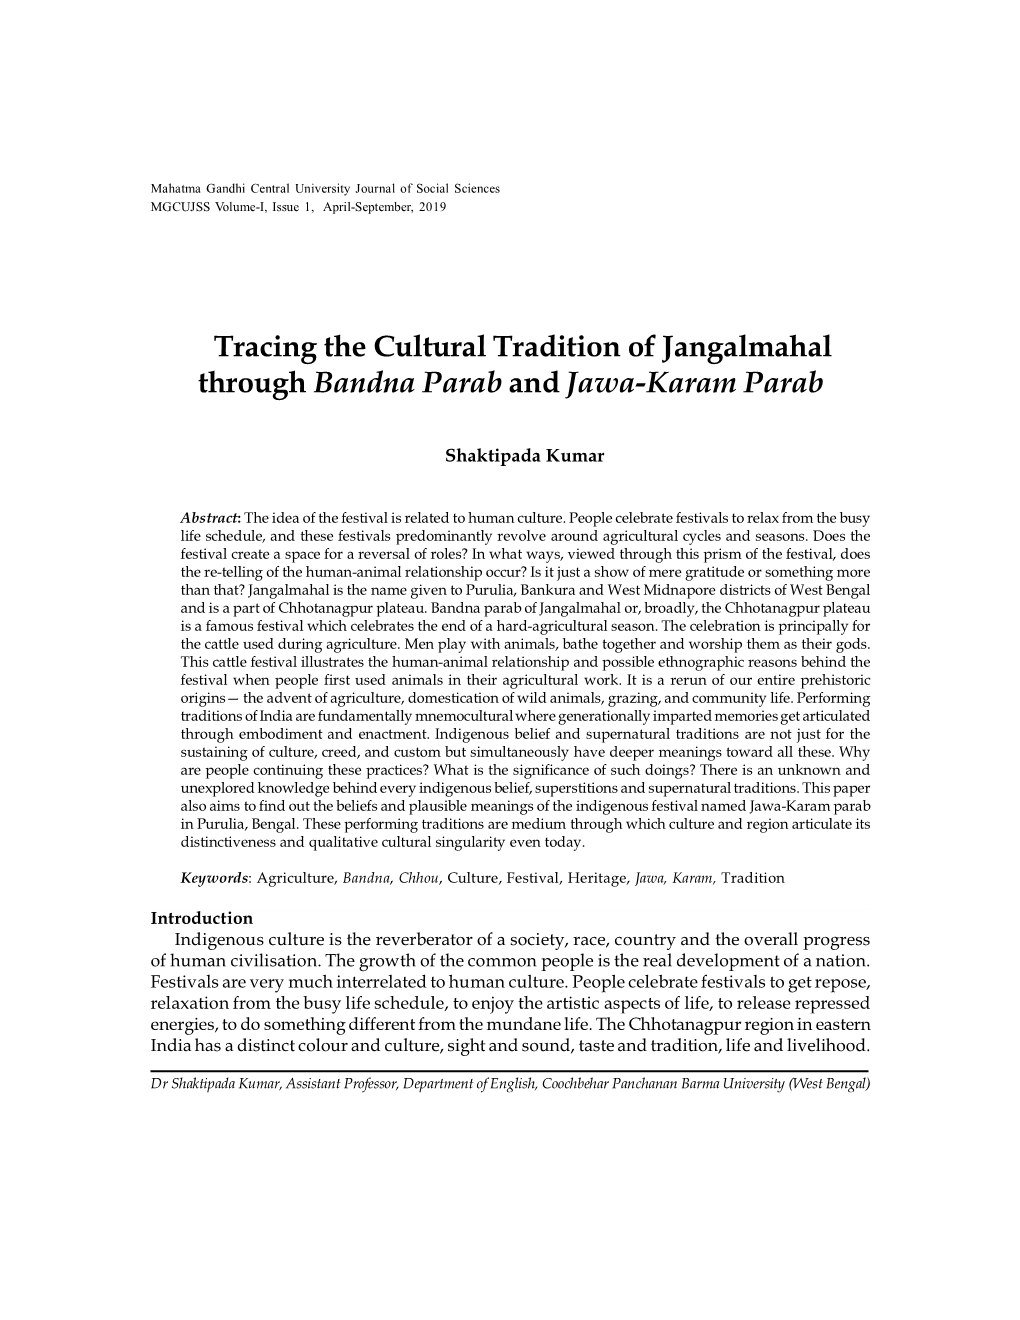 Tracing the Cultural Tradition of Jangalmahal Through Bandna Parab and Jawa-Karam Parab